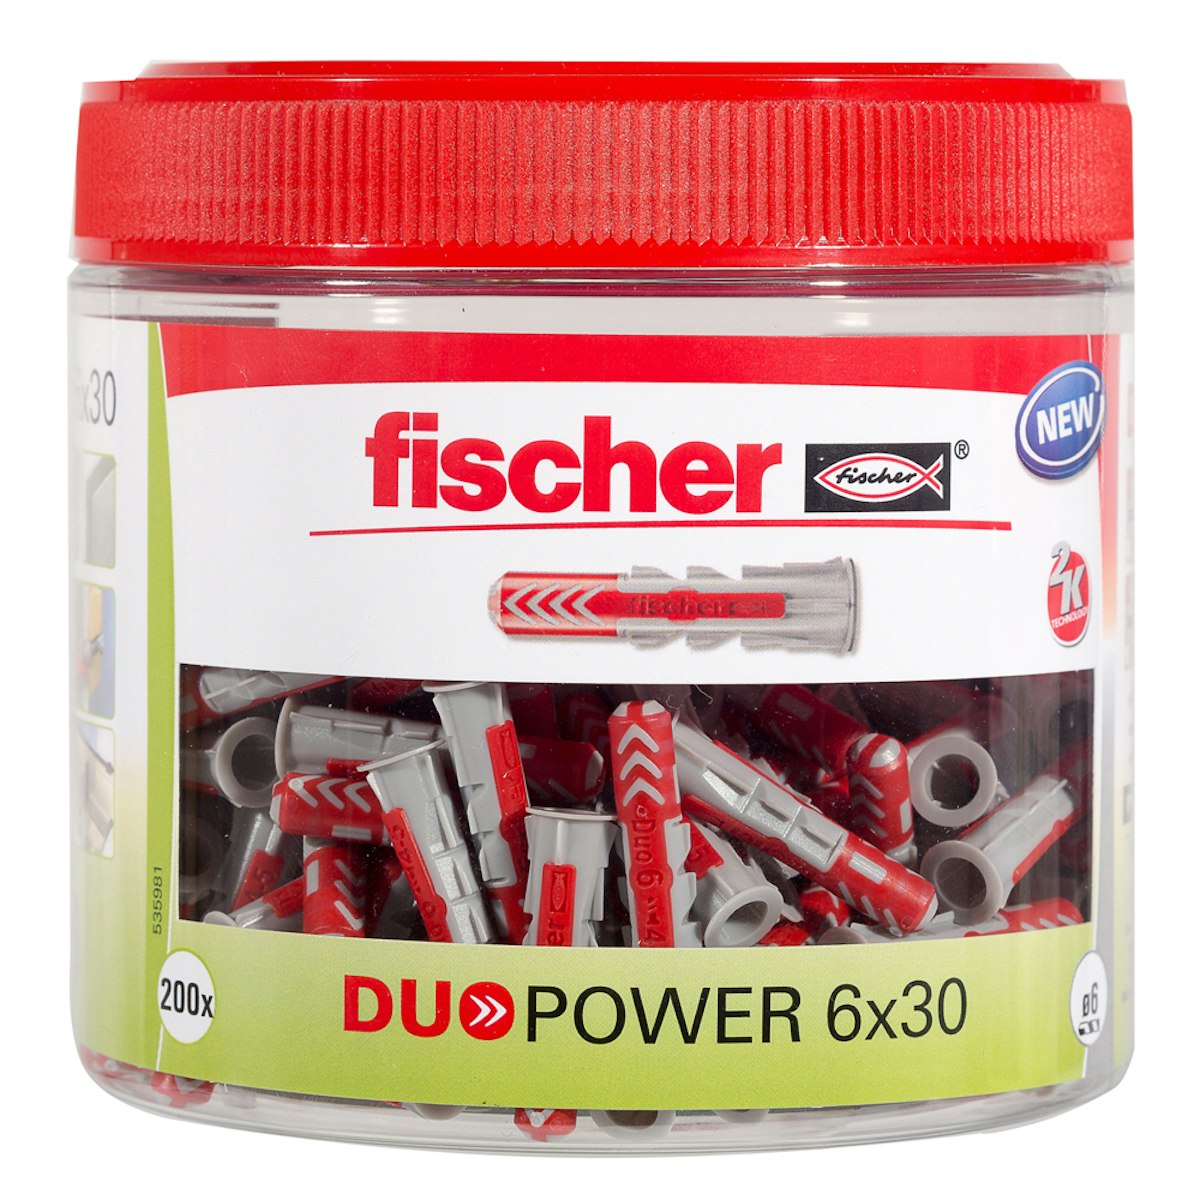 FISCHER Universaldübel Duopower 6x30 (200 Stück) von fischerwerke GmbH & Co. KG